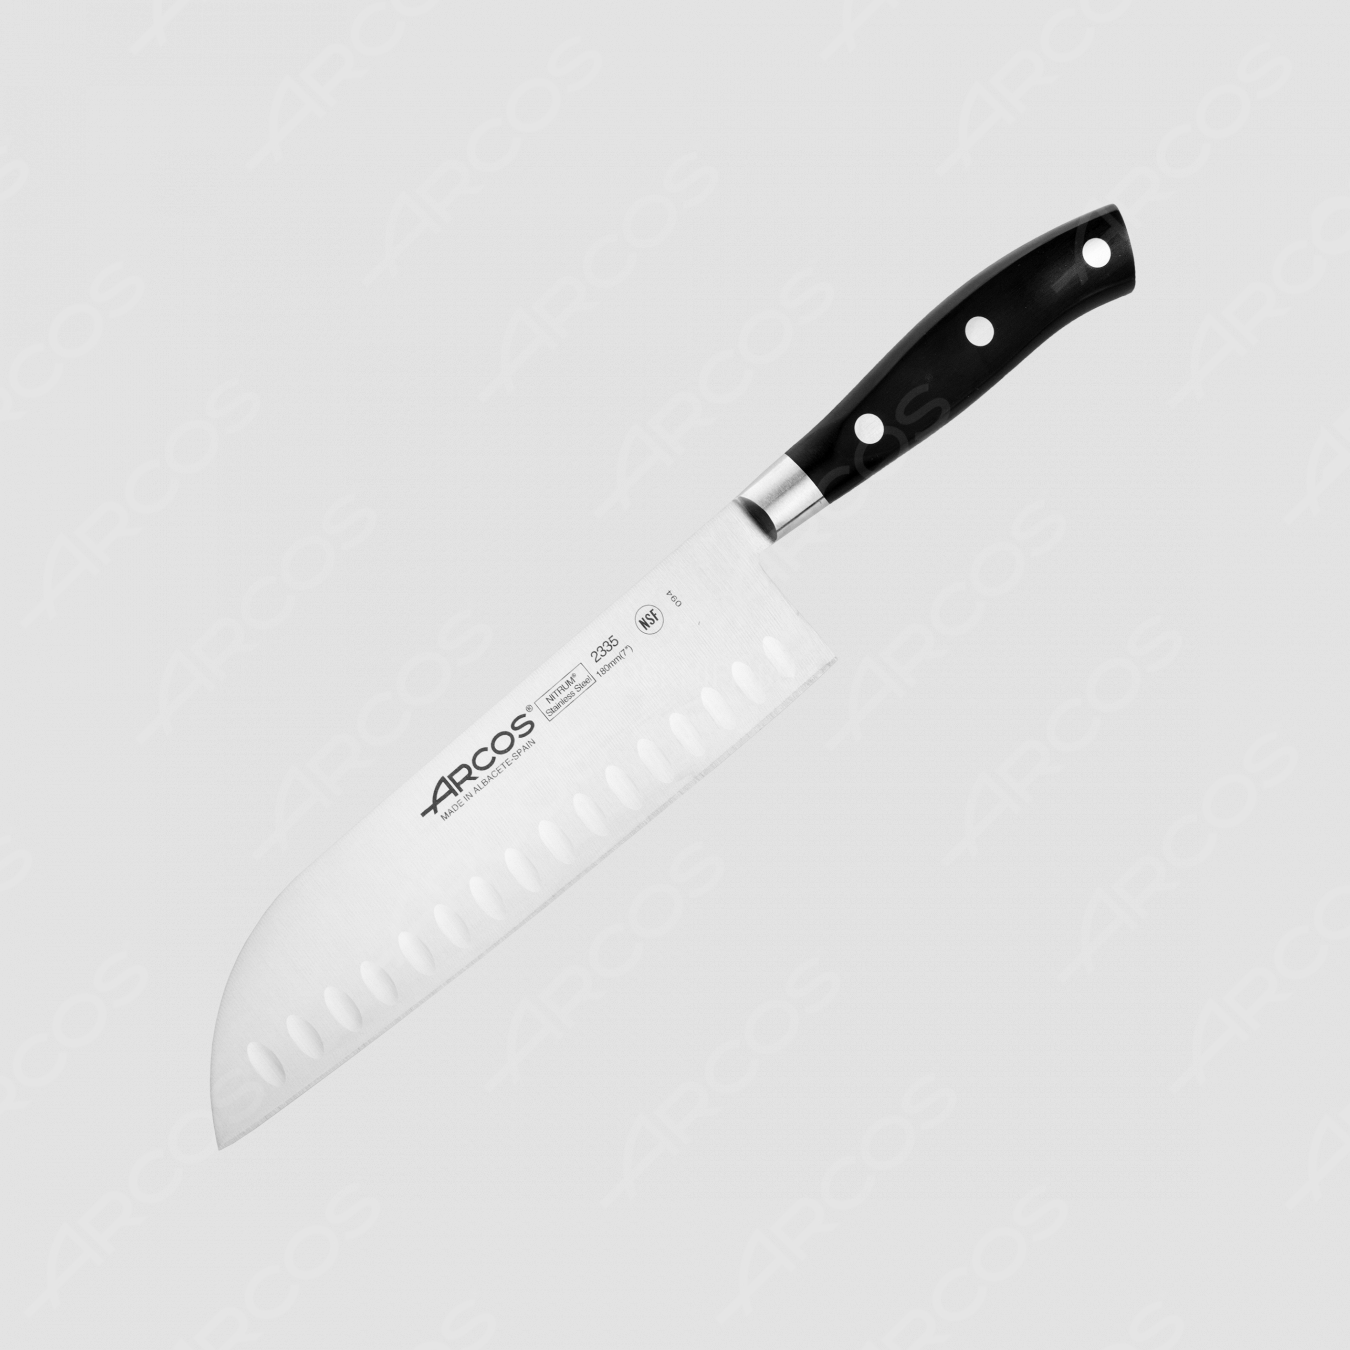 Нож кухонный Сантоку 18 см, серия Riviera, ARCOS, Испания